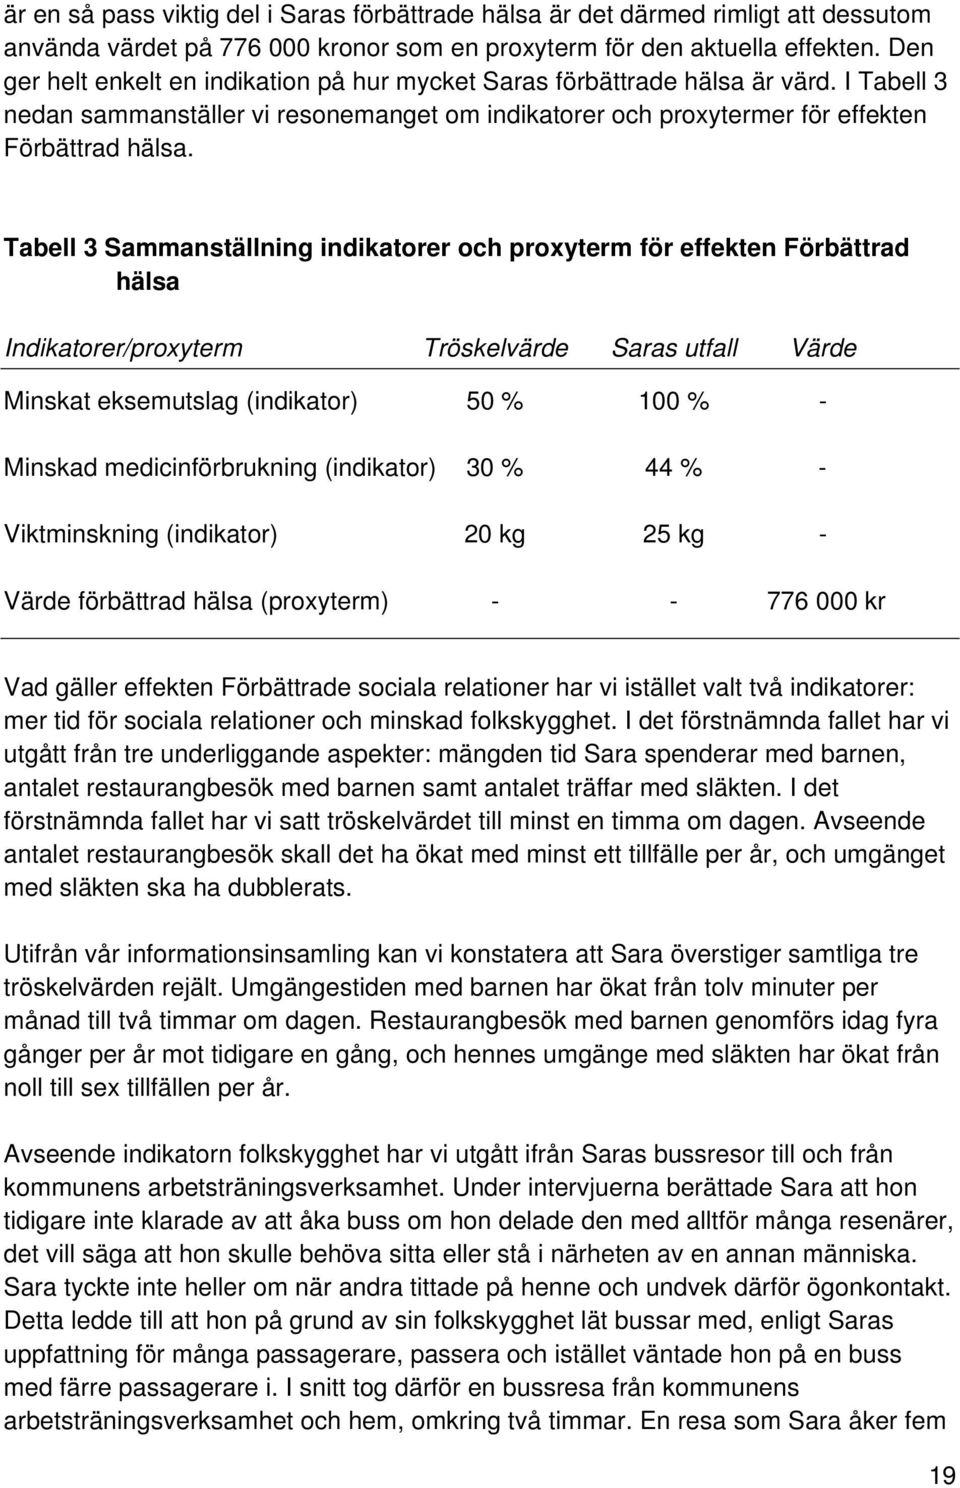 Tabell 3 Sammanställning indikatorer och proxyterm för effekten Förbättrad hälsa Indikatorer/proxyterm Tröskelvärde Saras utfall Värde Minskat eksemutslag (indikator) 50 % 100 % - Minskad